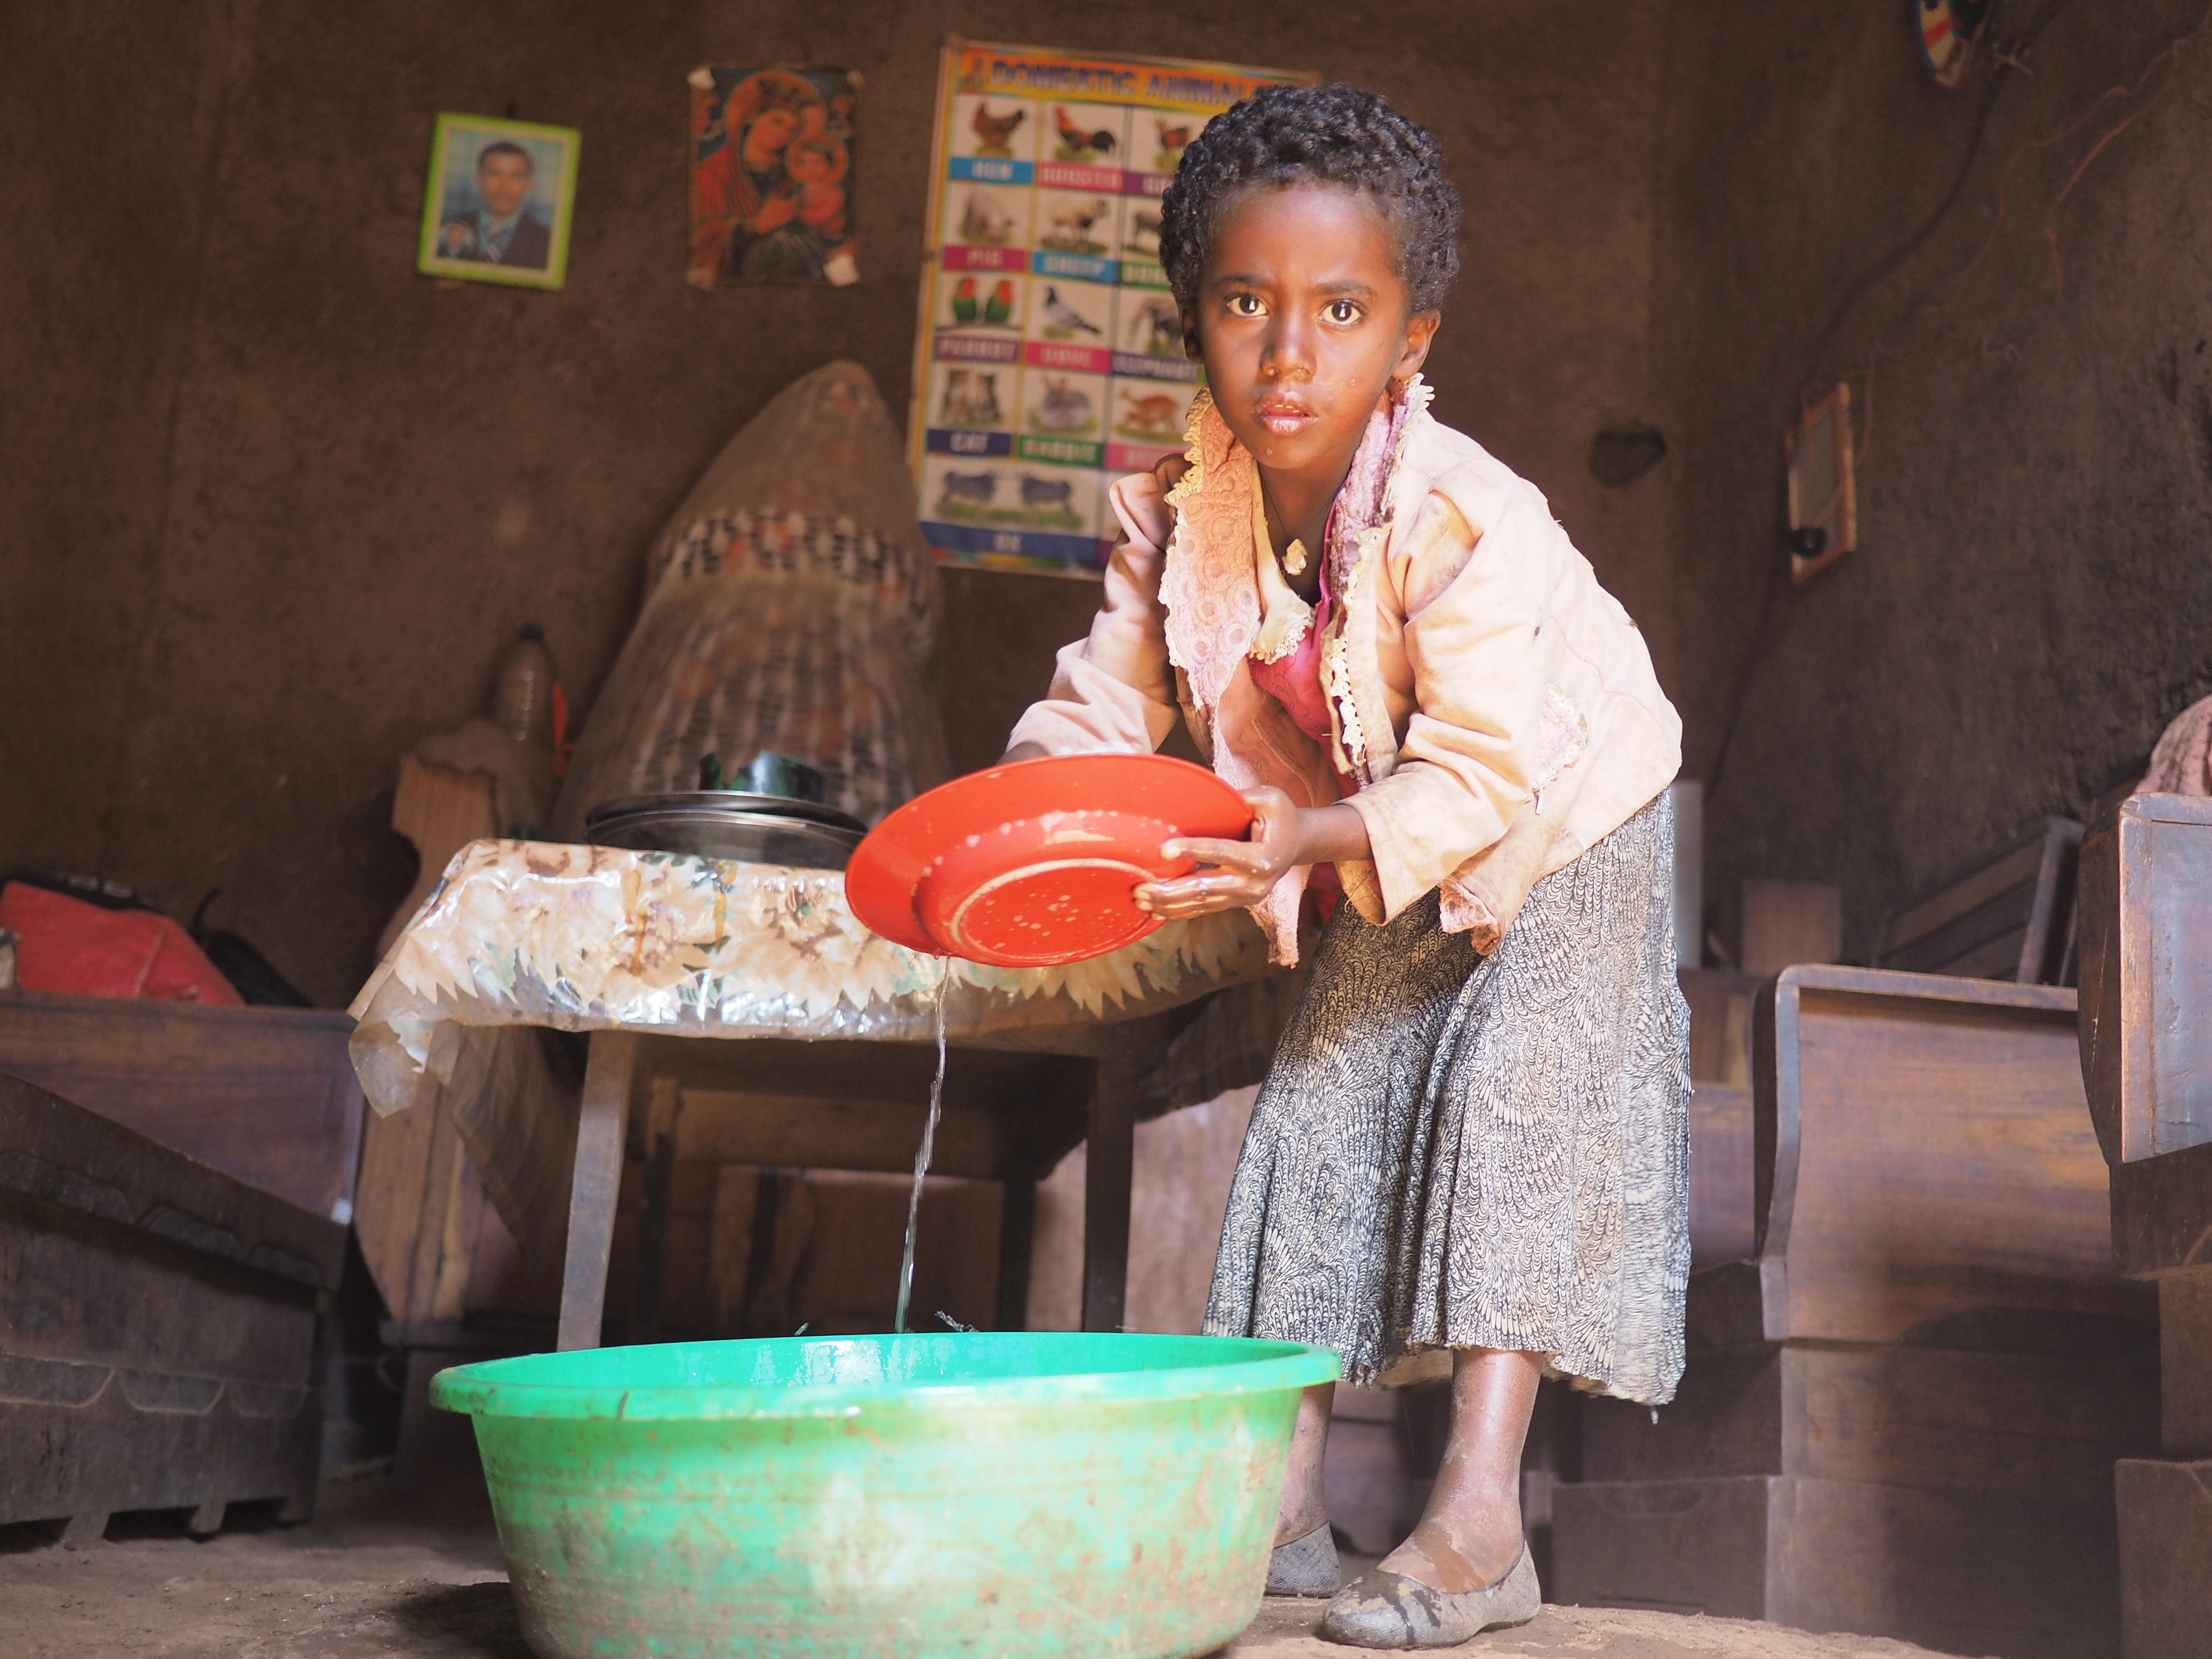 Reportage Äthiopien: "Verkauft und ausgebeutet"; Foto: Mädchen beim Abwasch (Quelle: Malte Pfau / Kindernothilfe)